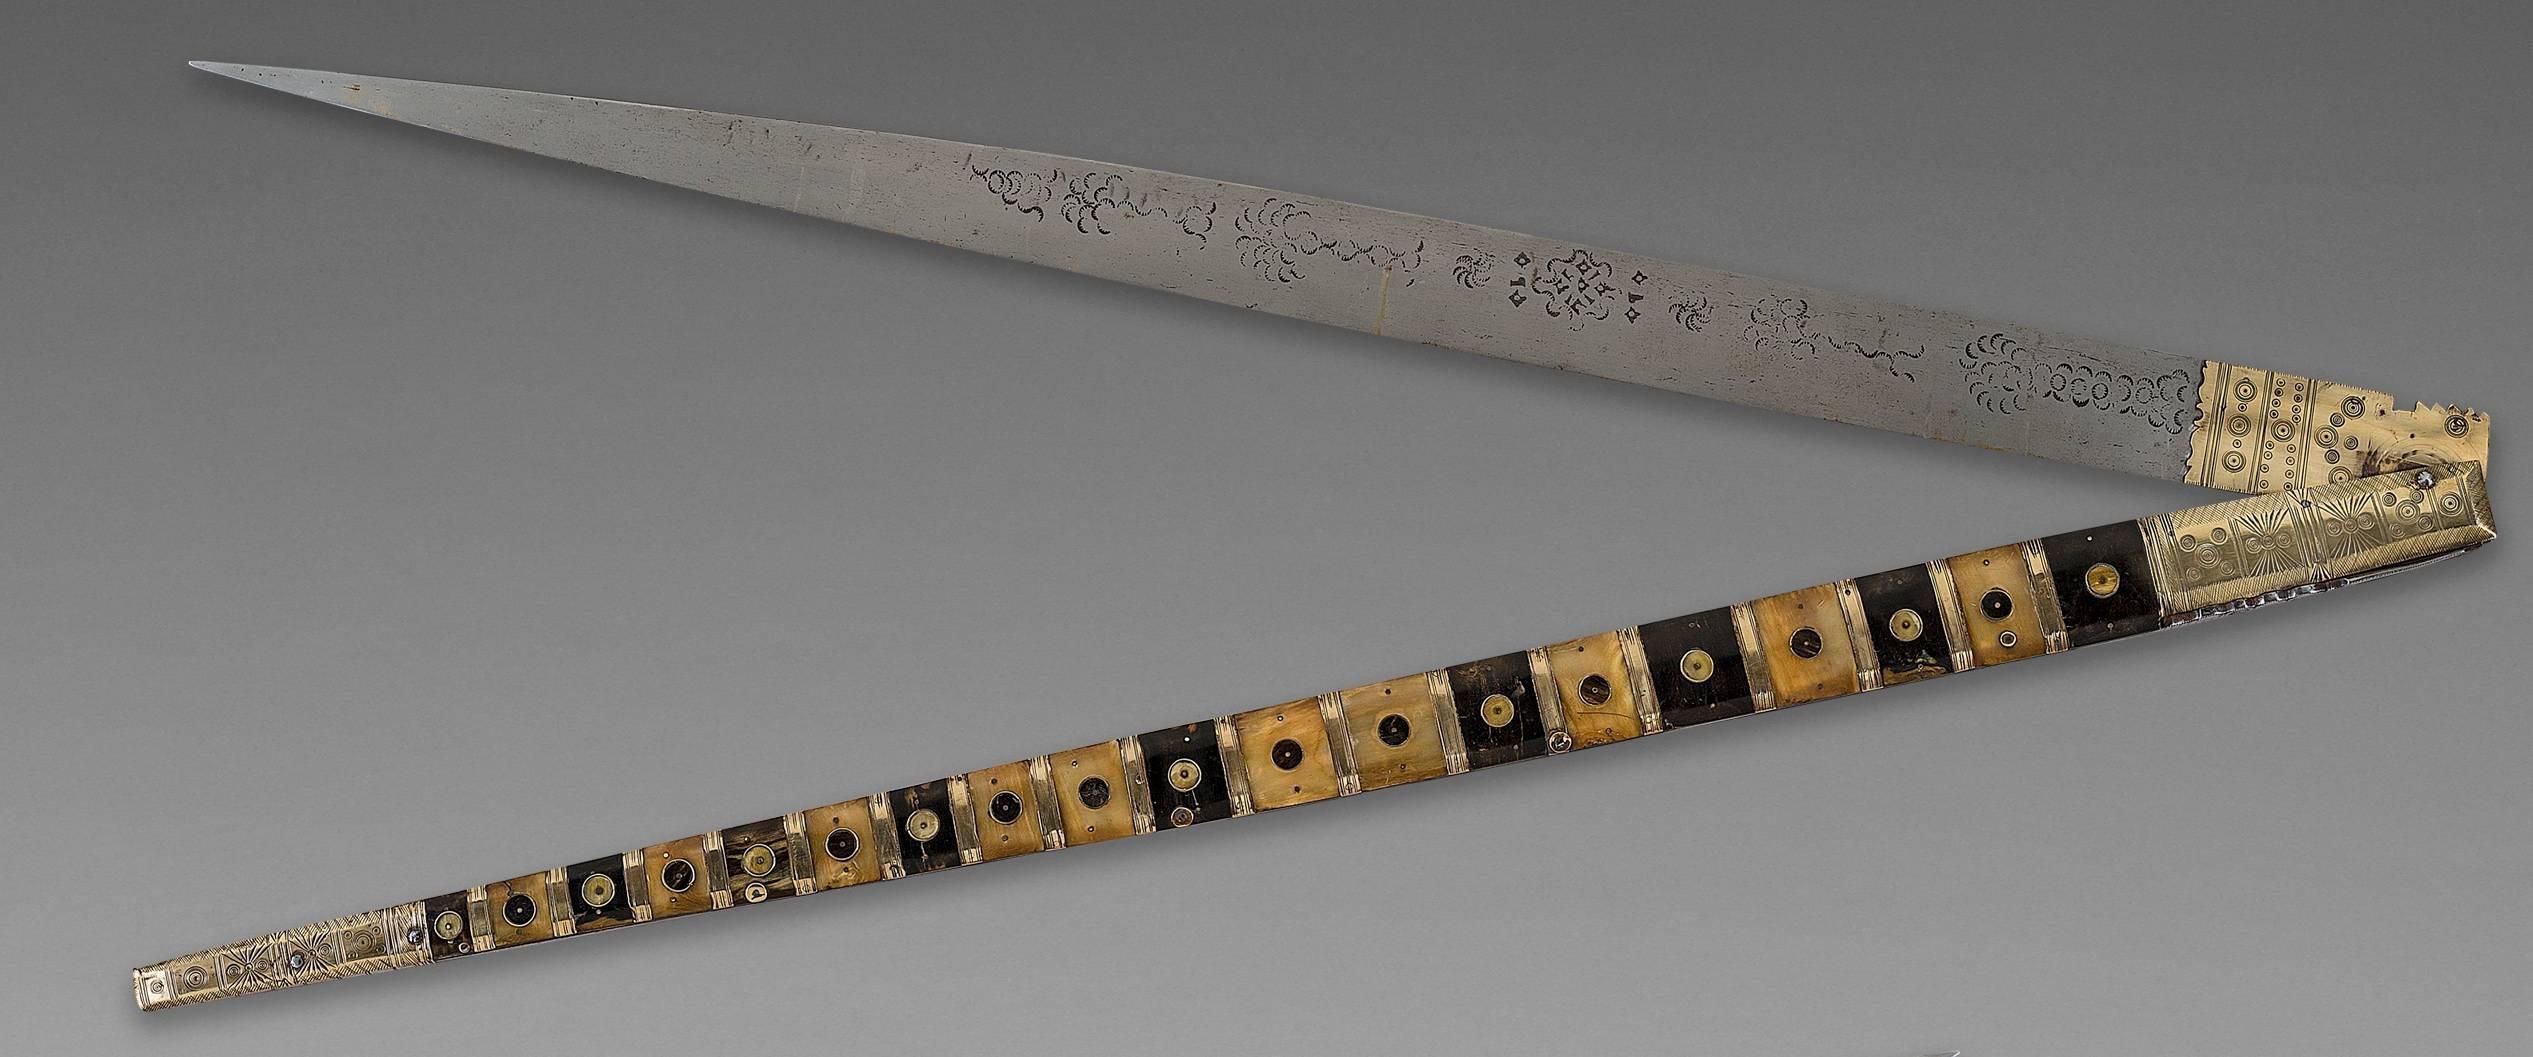 Navaja espagnole, Espagne
1806

Ce couteau exceptionnel date des guerres d'Espagne (1808-1813). Superbe qualité. La lame est gravée sur une face 